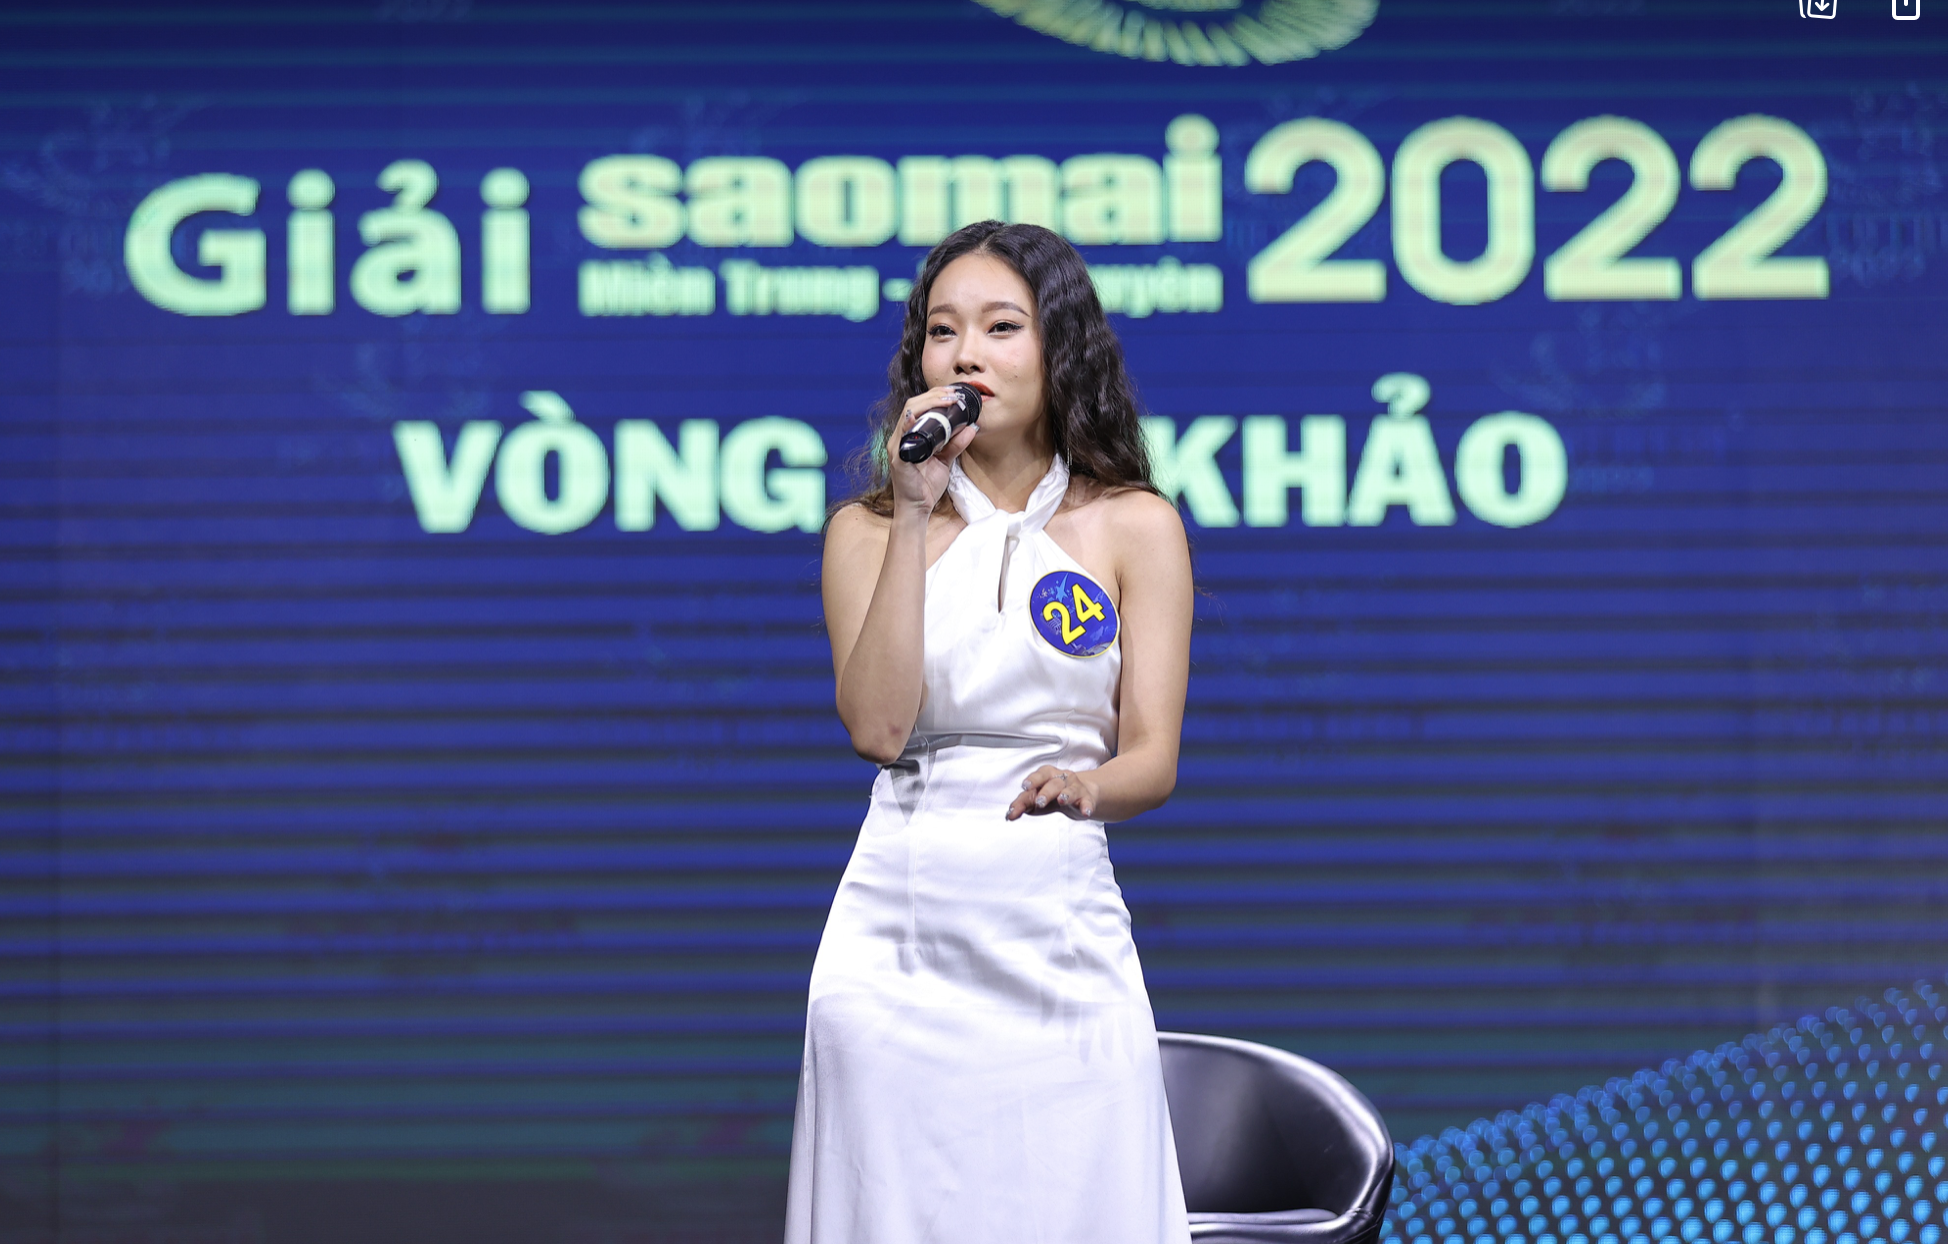 Những thí sinh đáng mong đợi tại đêm thi cuối cùng Giải sao Mai 2022 khu vực miền Trung, Tây Nguyên - Ảnh 1.